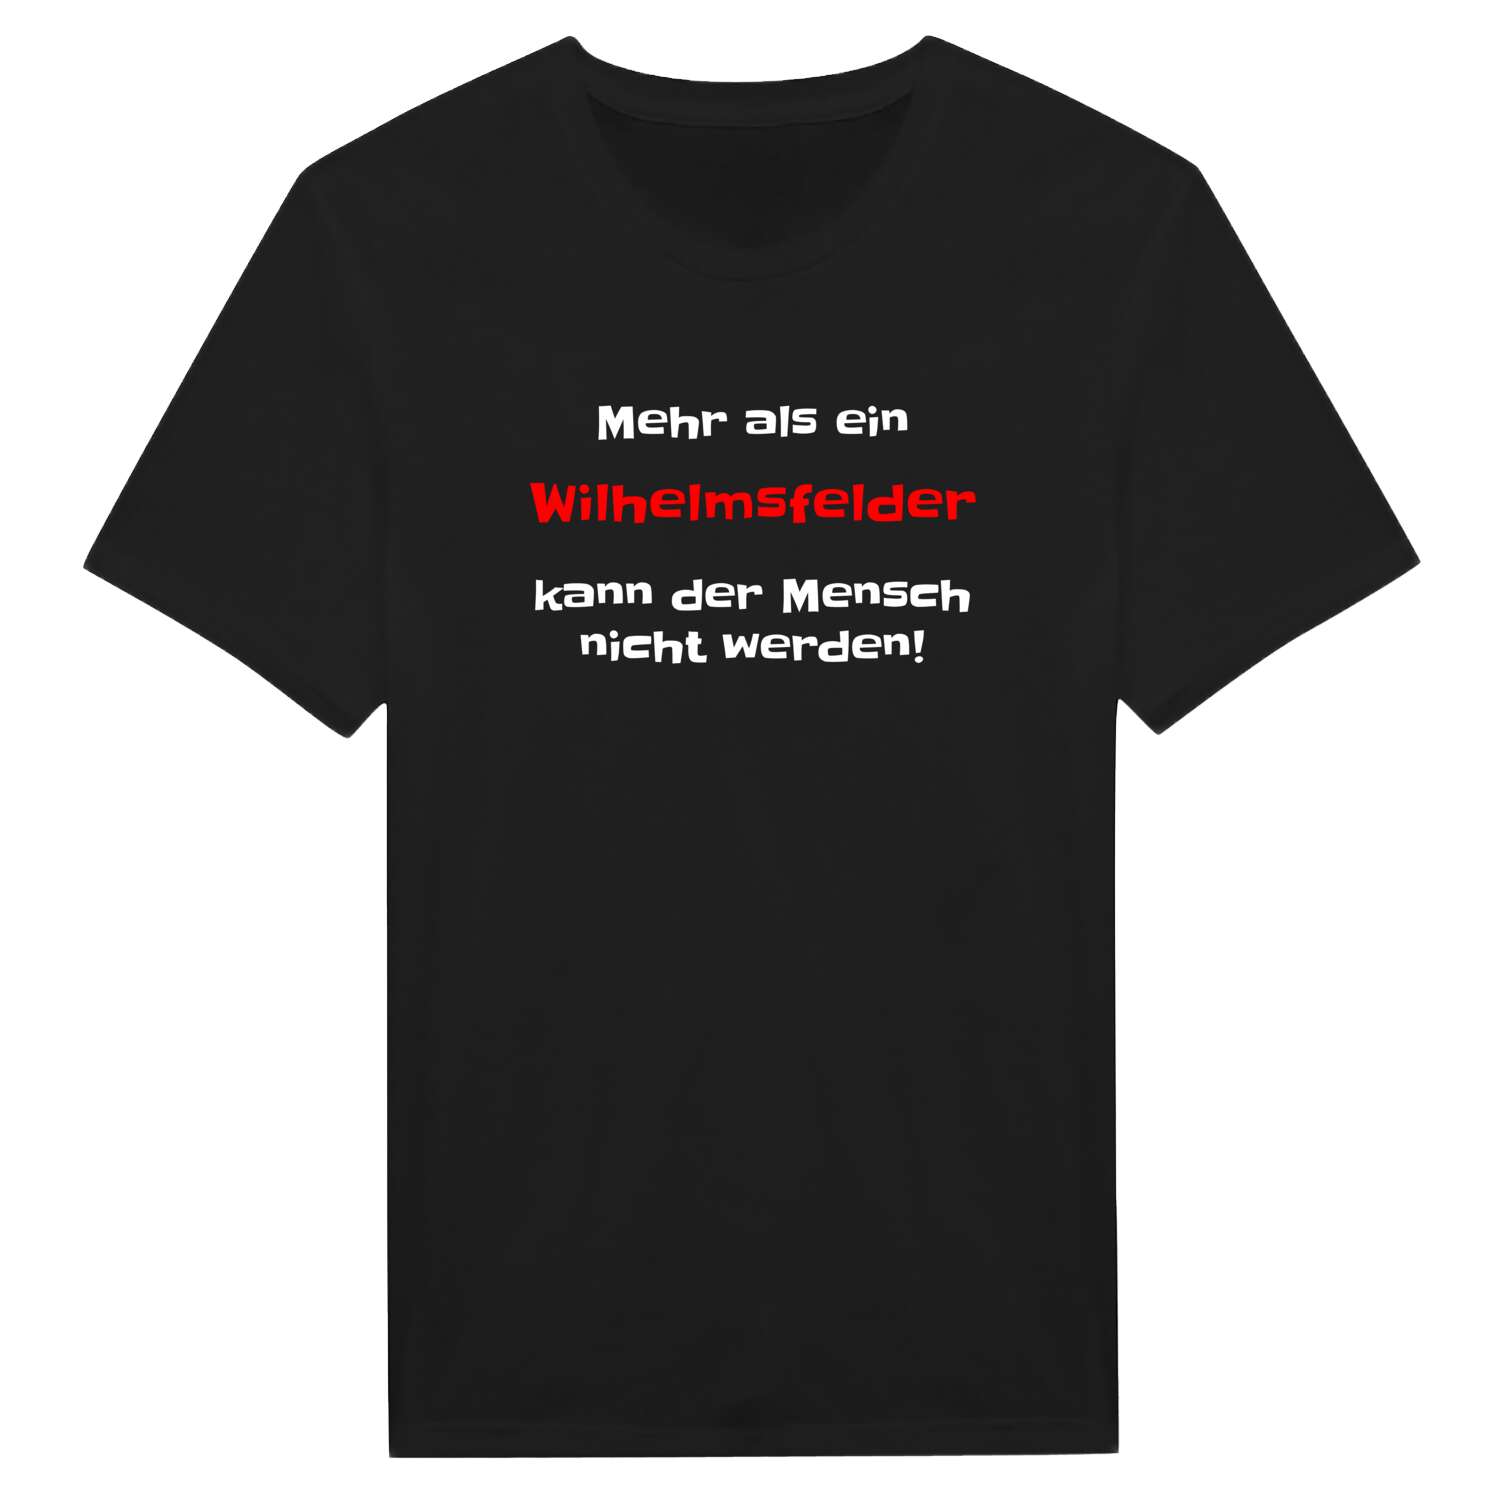 Wilhelmsfeld T-Shirt »Mehr als ein«